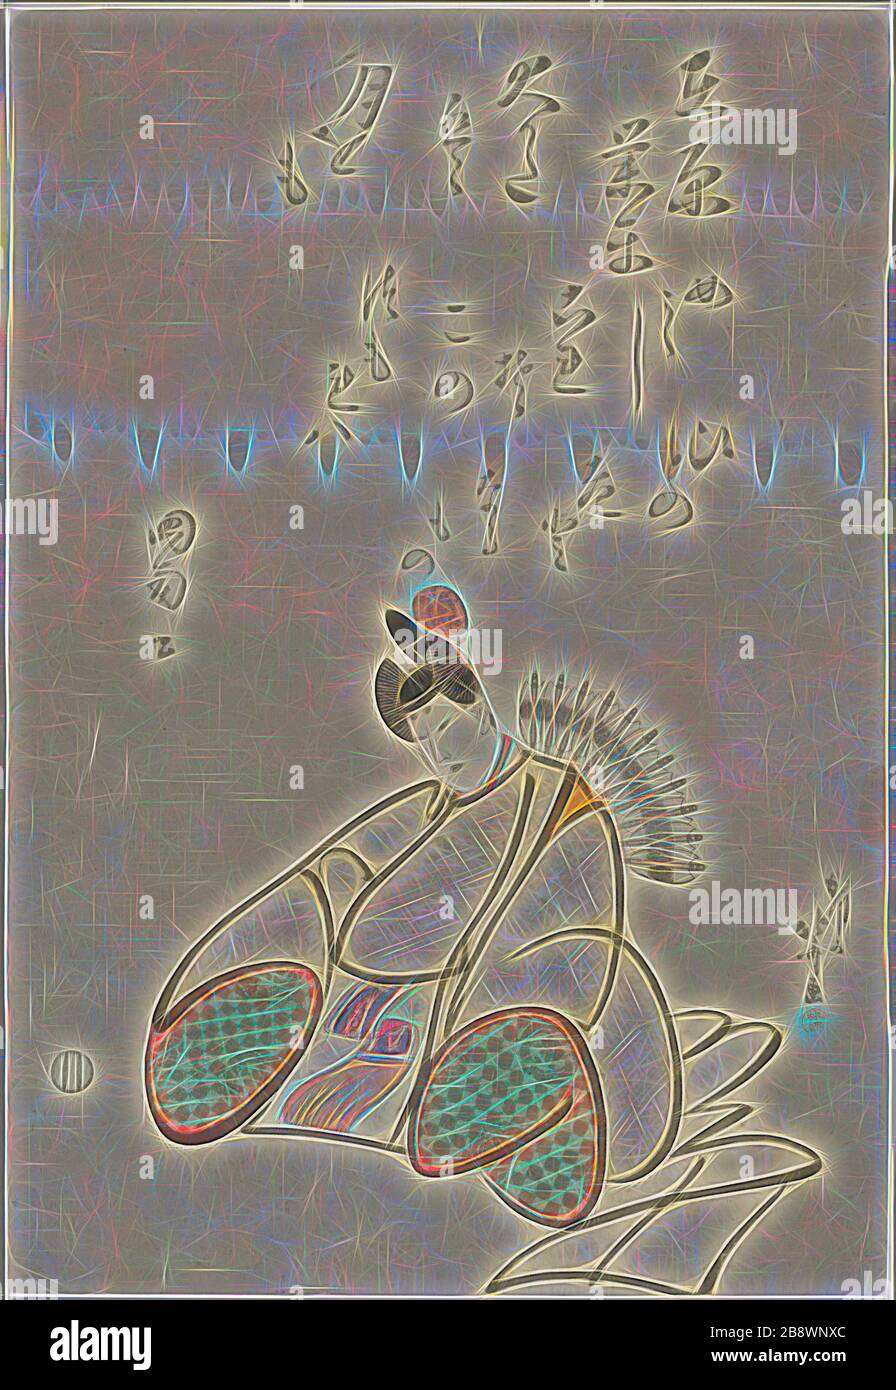 Der Dichter Ariwara no Narihira, aus der Reihe sechs unsterbliche Dichter (Rokkasen), c 1798, Katsushika Hokusai ?? ??, Japanisch, 1760-1849, Japan, Farbholzholzmuster, oban, 37,5 x 25,5 cm, von Gibon neu vorgestellt, Design von warmem, fröhlichem Leuchten von Helligkeit und Lichtstrahlen. Klassische Kunst mit moderner Note neu erfunden. Fotografie, inspiriert vom Futurismus, die dynamische Energie moderner Technologie, Bewegung, Geschwindigkeit und Kultur revolutionieren. Stockfoto